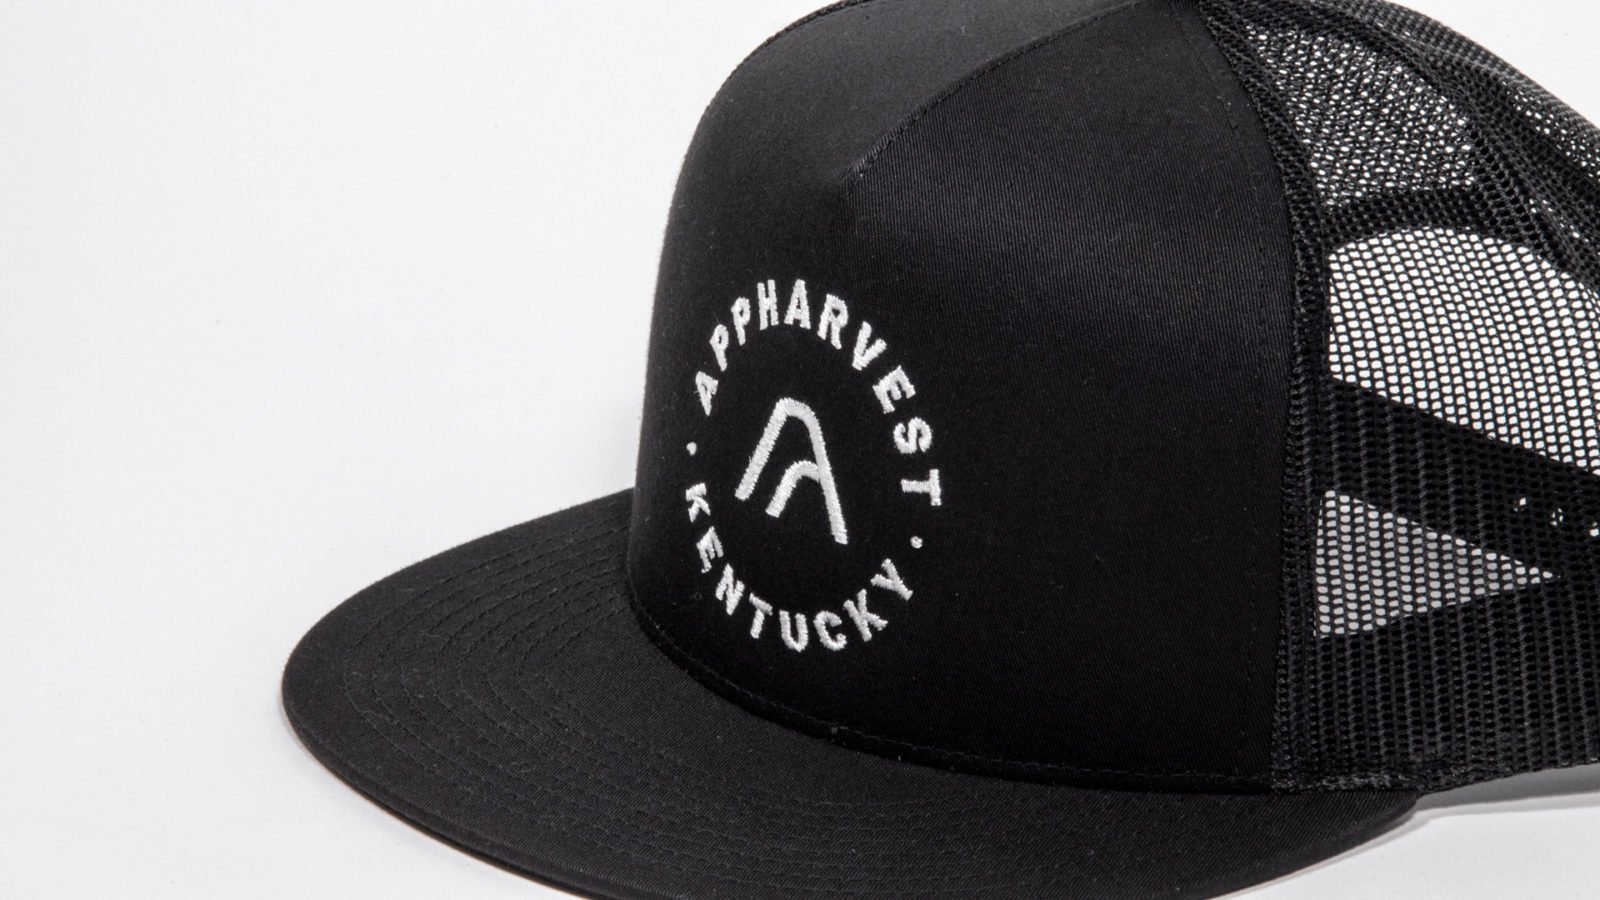 AppHarvest AgTech Greenhouse Branding Trucker Hat Close Up